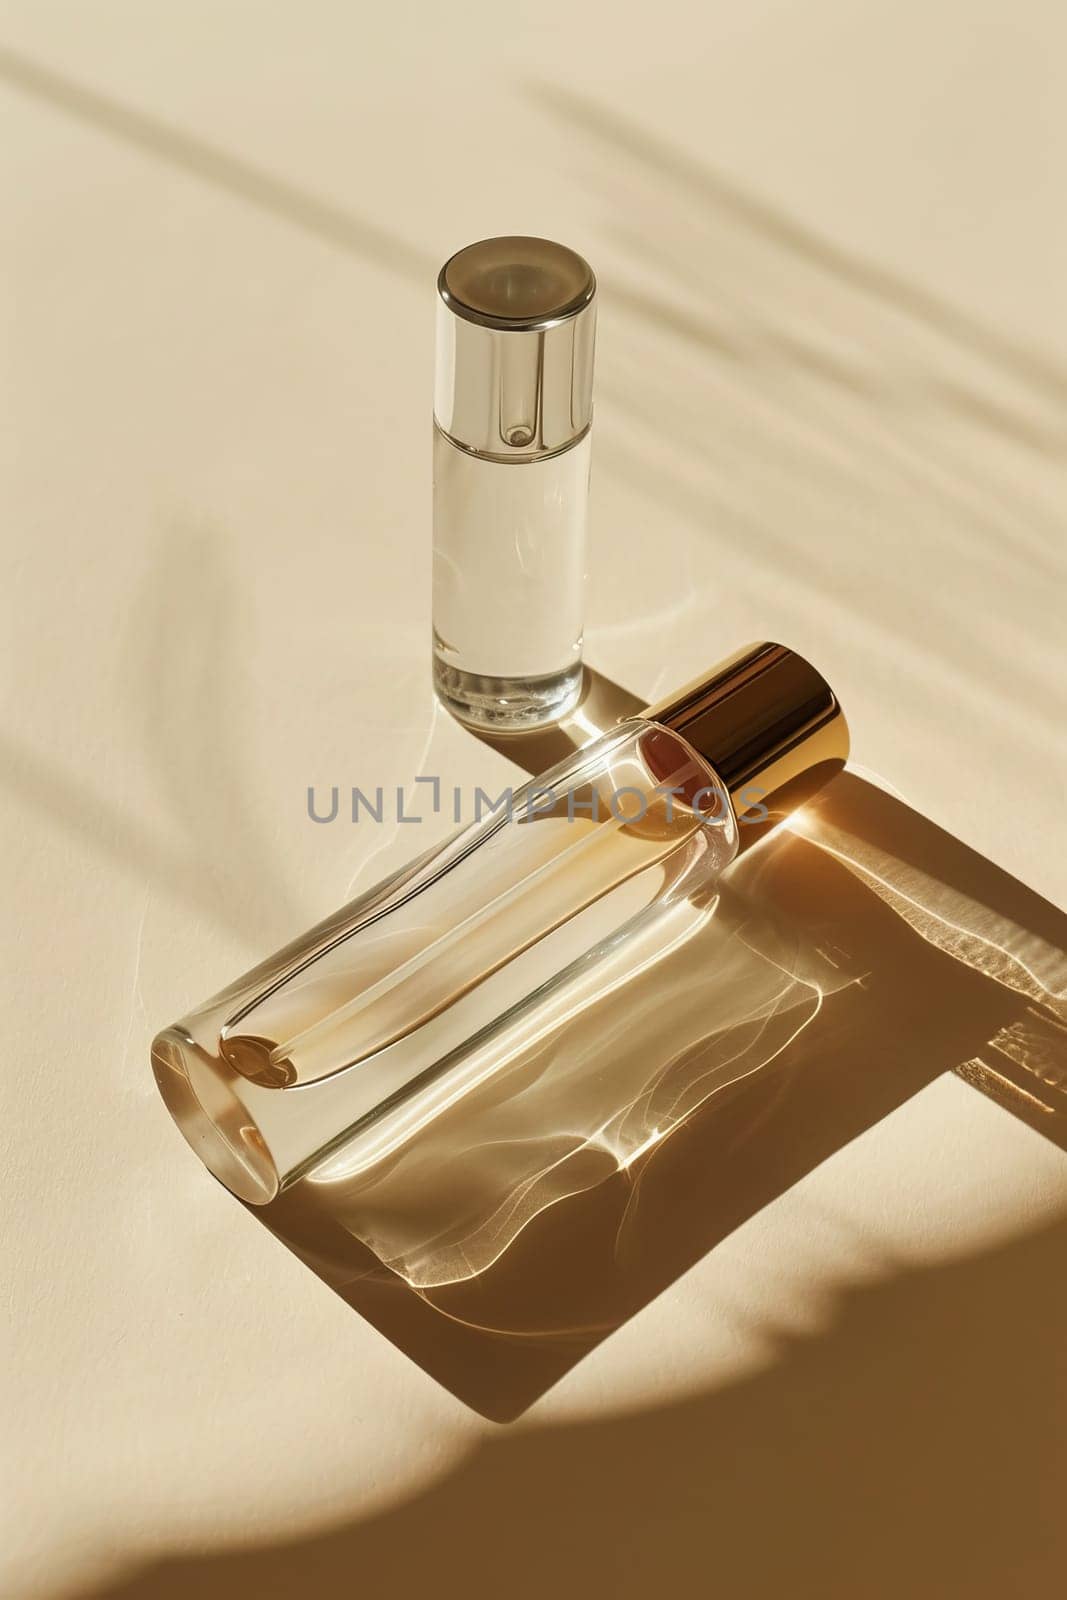 Mock up Luxury perfume bottle and luxury background.